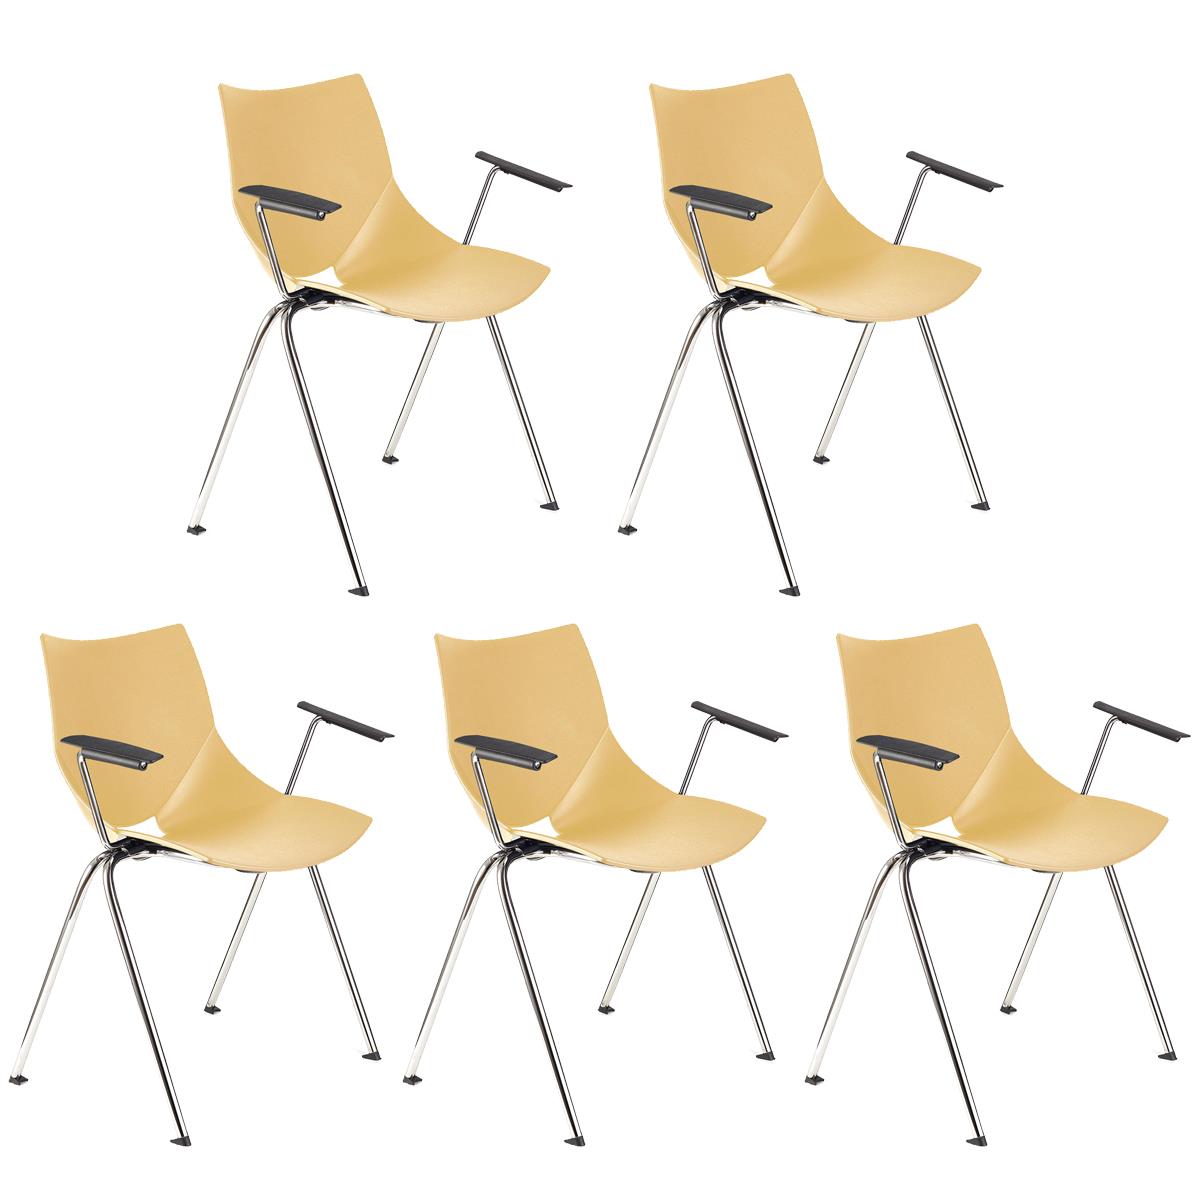 Lote 5 Cadeiras de Visita AMIR COM BRAÇOS, Confortável e Empilhável, Cor Creme